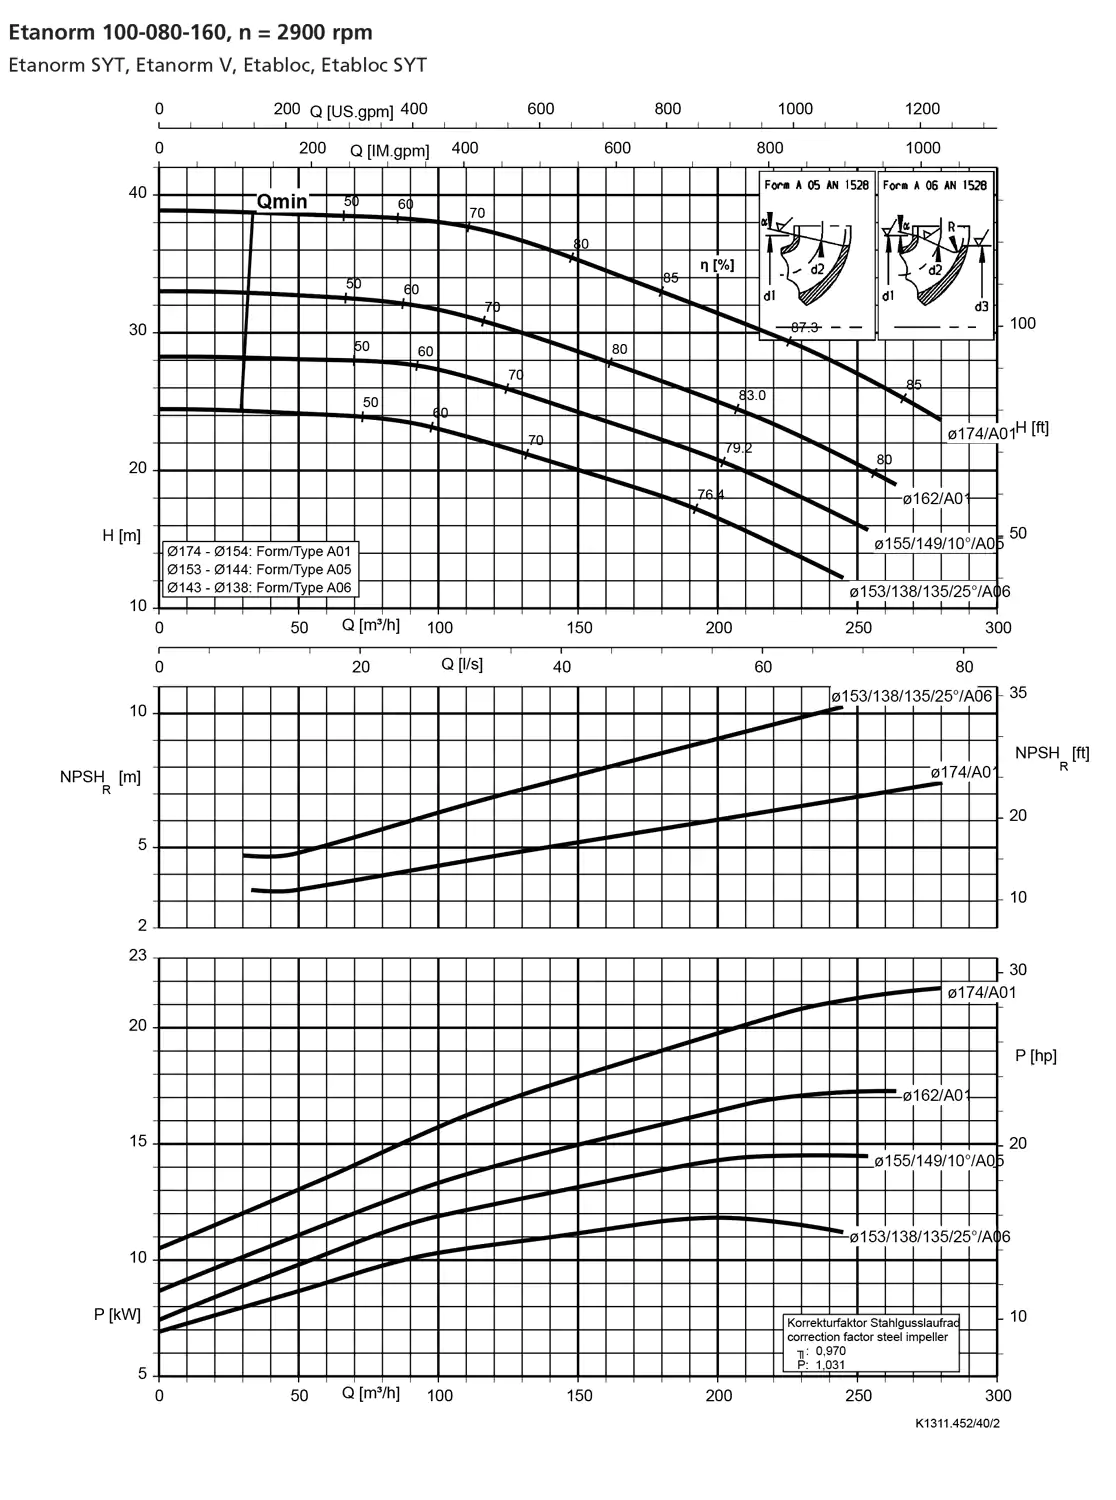 نمودار-کارکرد-پمپ-etanorm-syt-100-80-160-2900